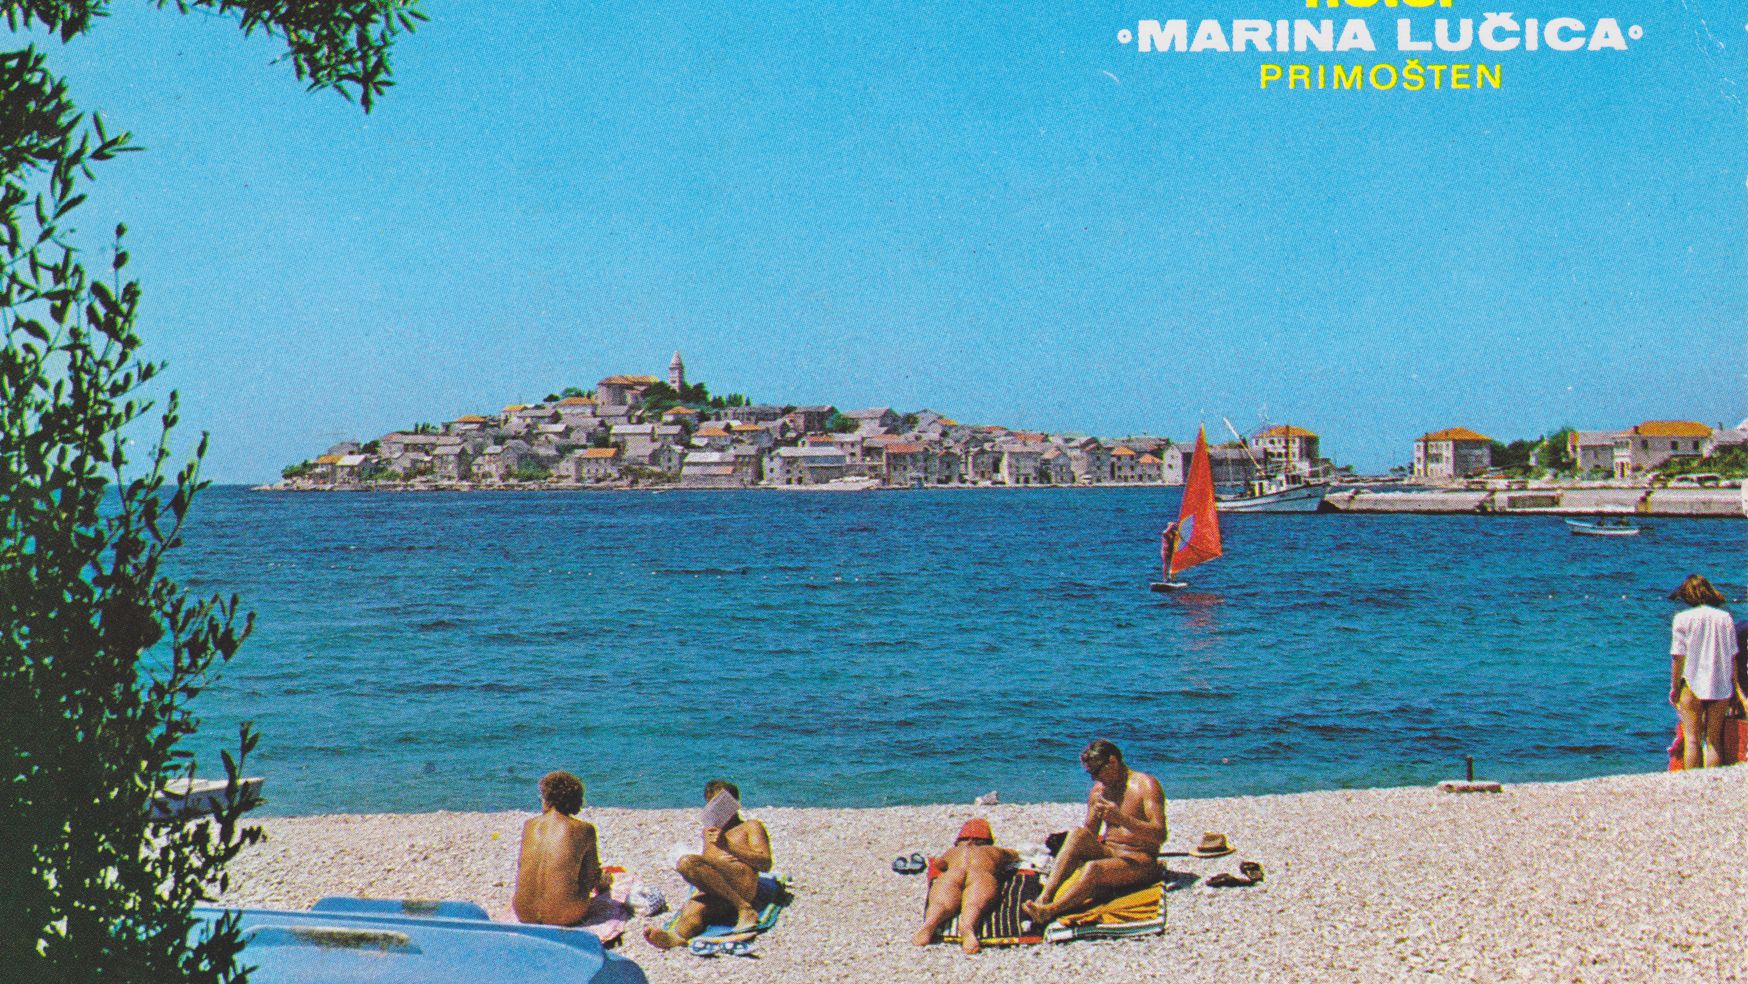 Μια κάρτ-ποστάλ εποχής απεικονίζει μια παραλία γυμνιστών με λουόμενους και μια αναποδογυρισμένη βάρκα. Στο βάθος εκτείνεται μια μικρή χερσόνησος με σπίτια και κτίρια. Ο ουρανός και η θάλασσα είναι μπλε.